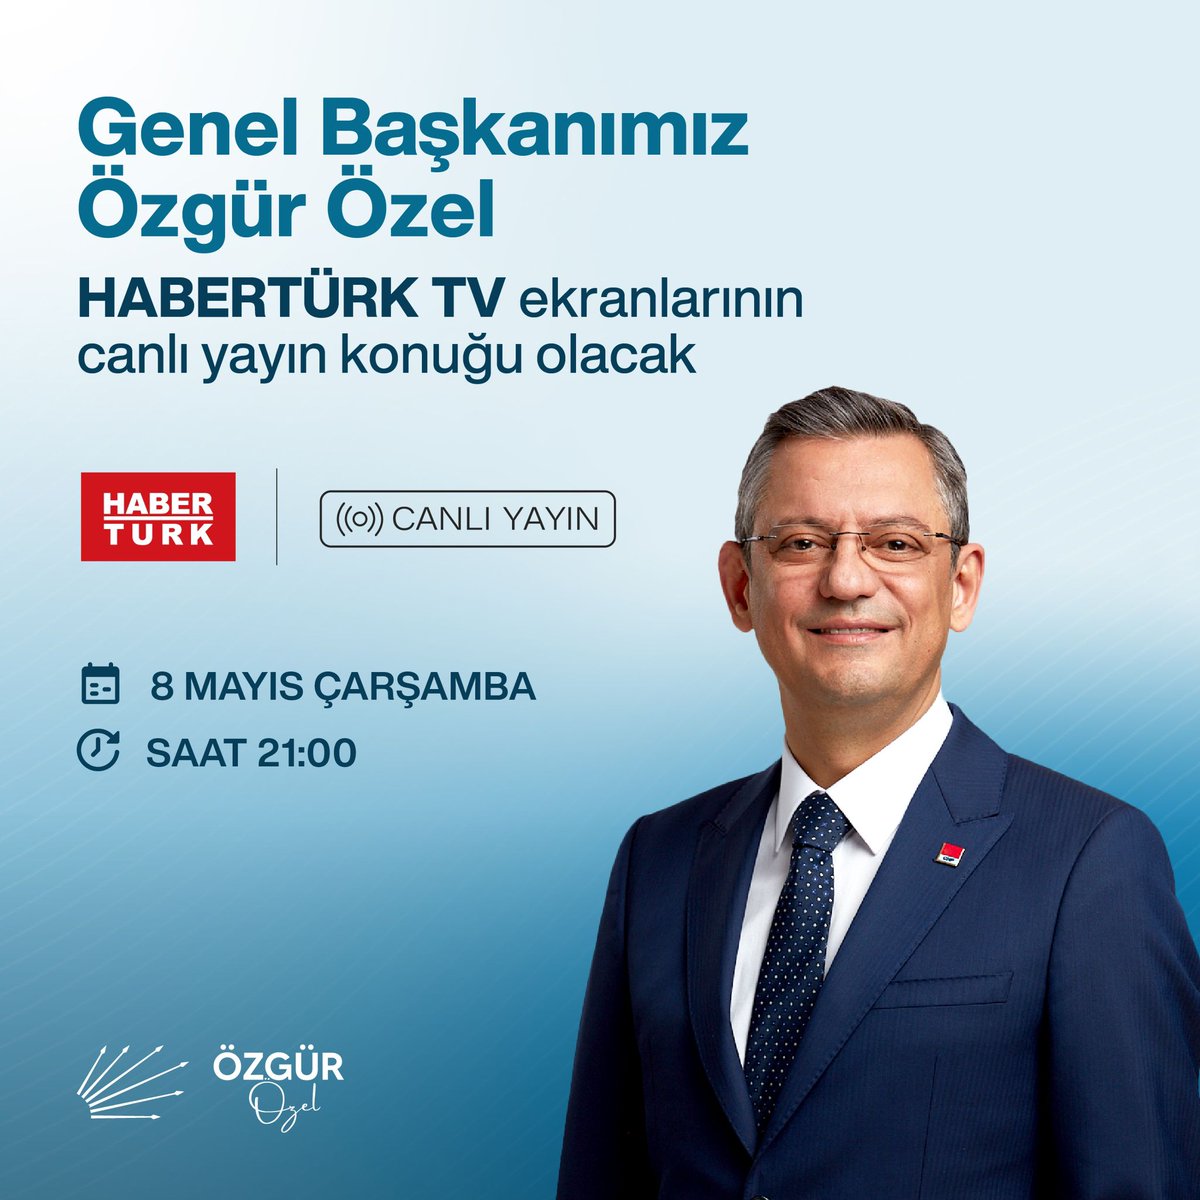 Genel Başkanımız Sayın Özgür Özel, bu akşam HaberTürk TV'de gazetecilerin sorularını yanıtlayacak. İzlemeniz dileğiyle. 🗓️8 Mayıs Çarşamba ⏰21.00